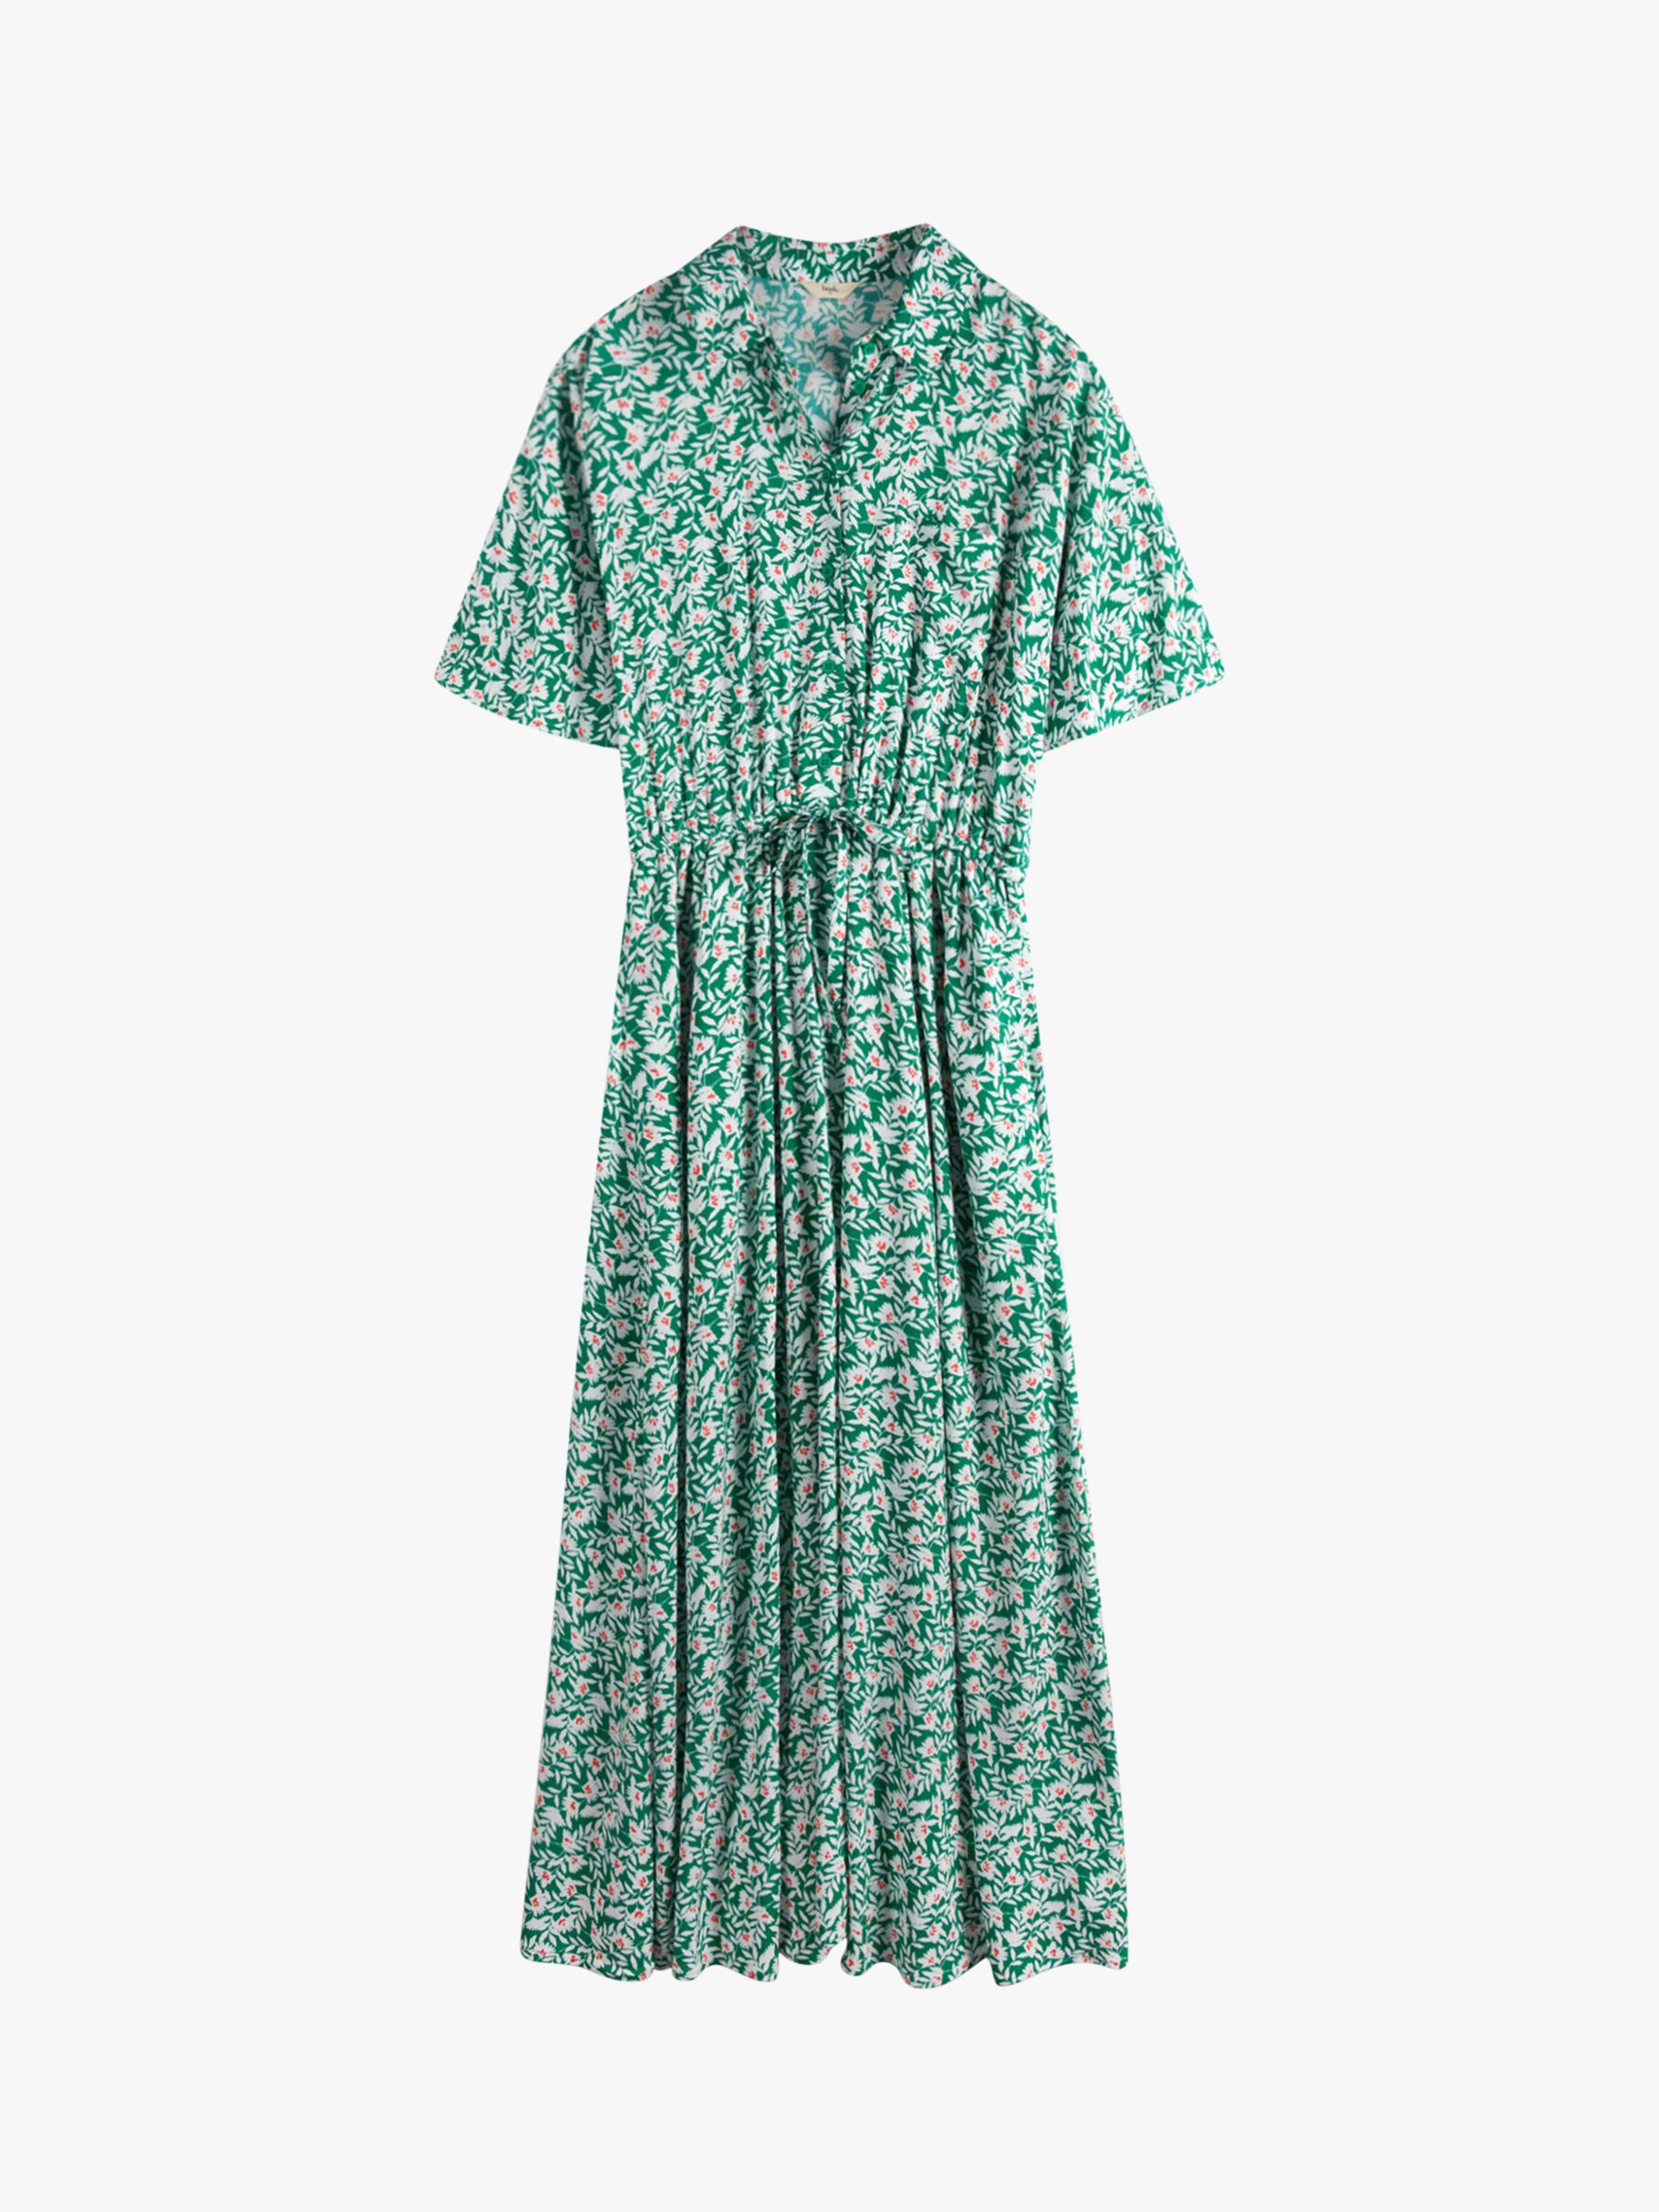 HUSH Ren Shirt Dress, Leafy Floral Green